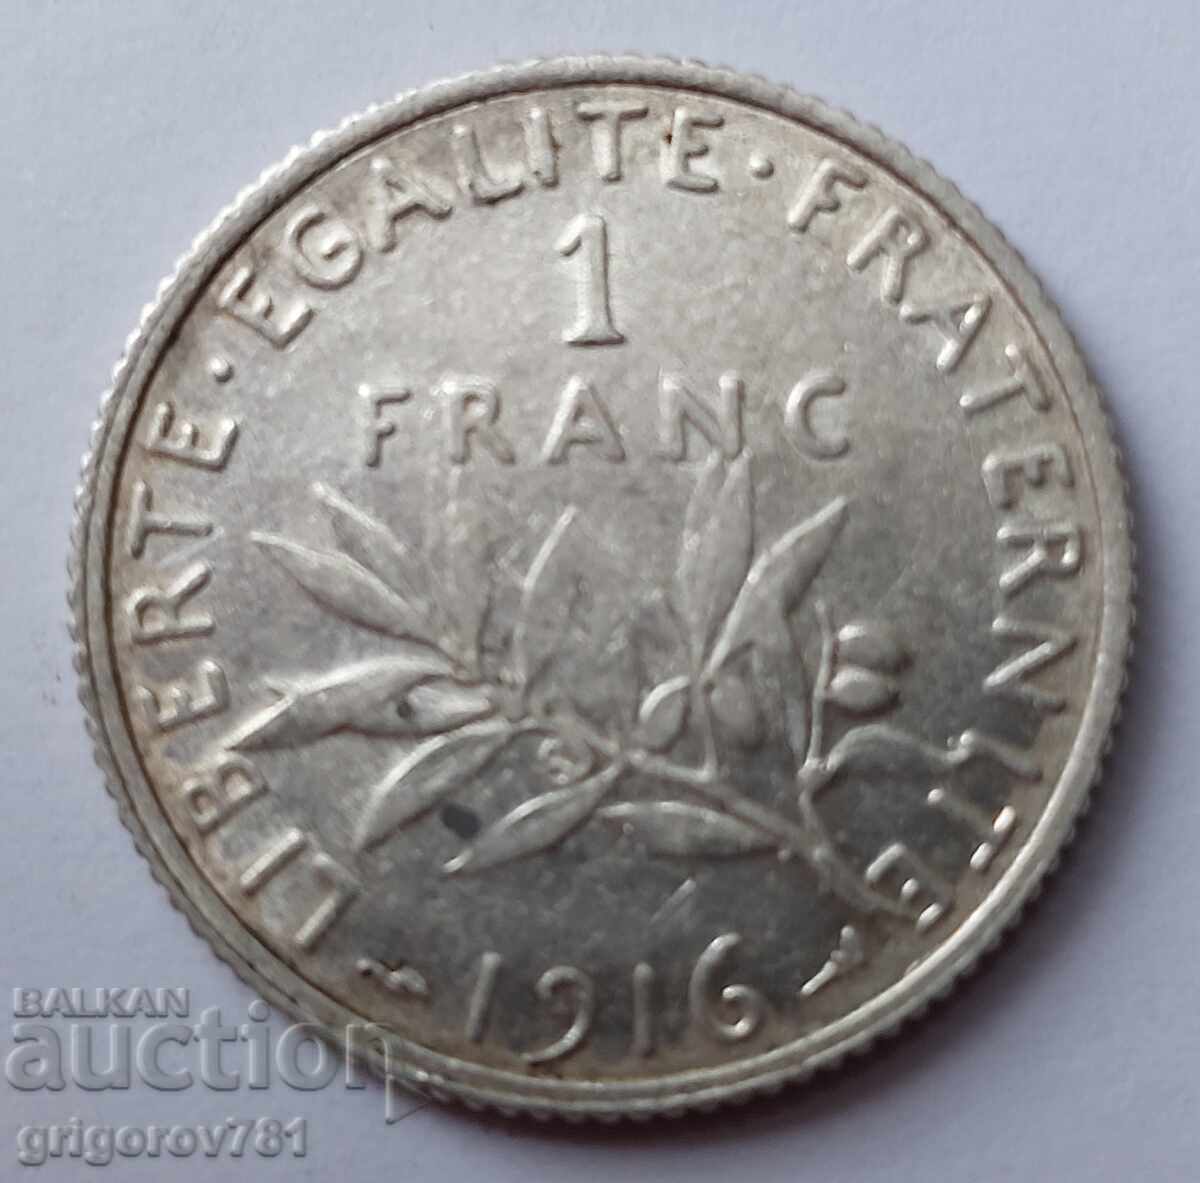 1 franc argint Franța 1916 - monedă de argint №6